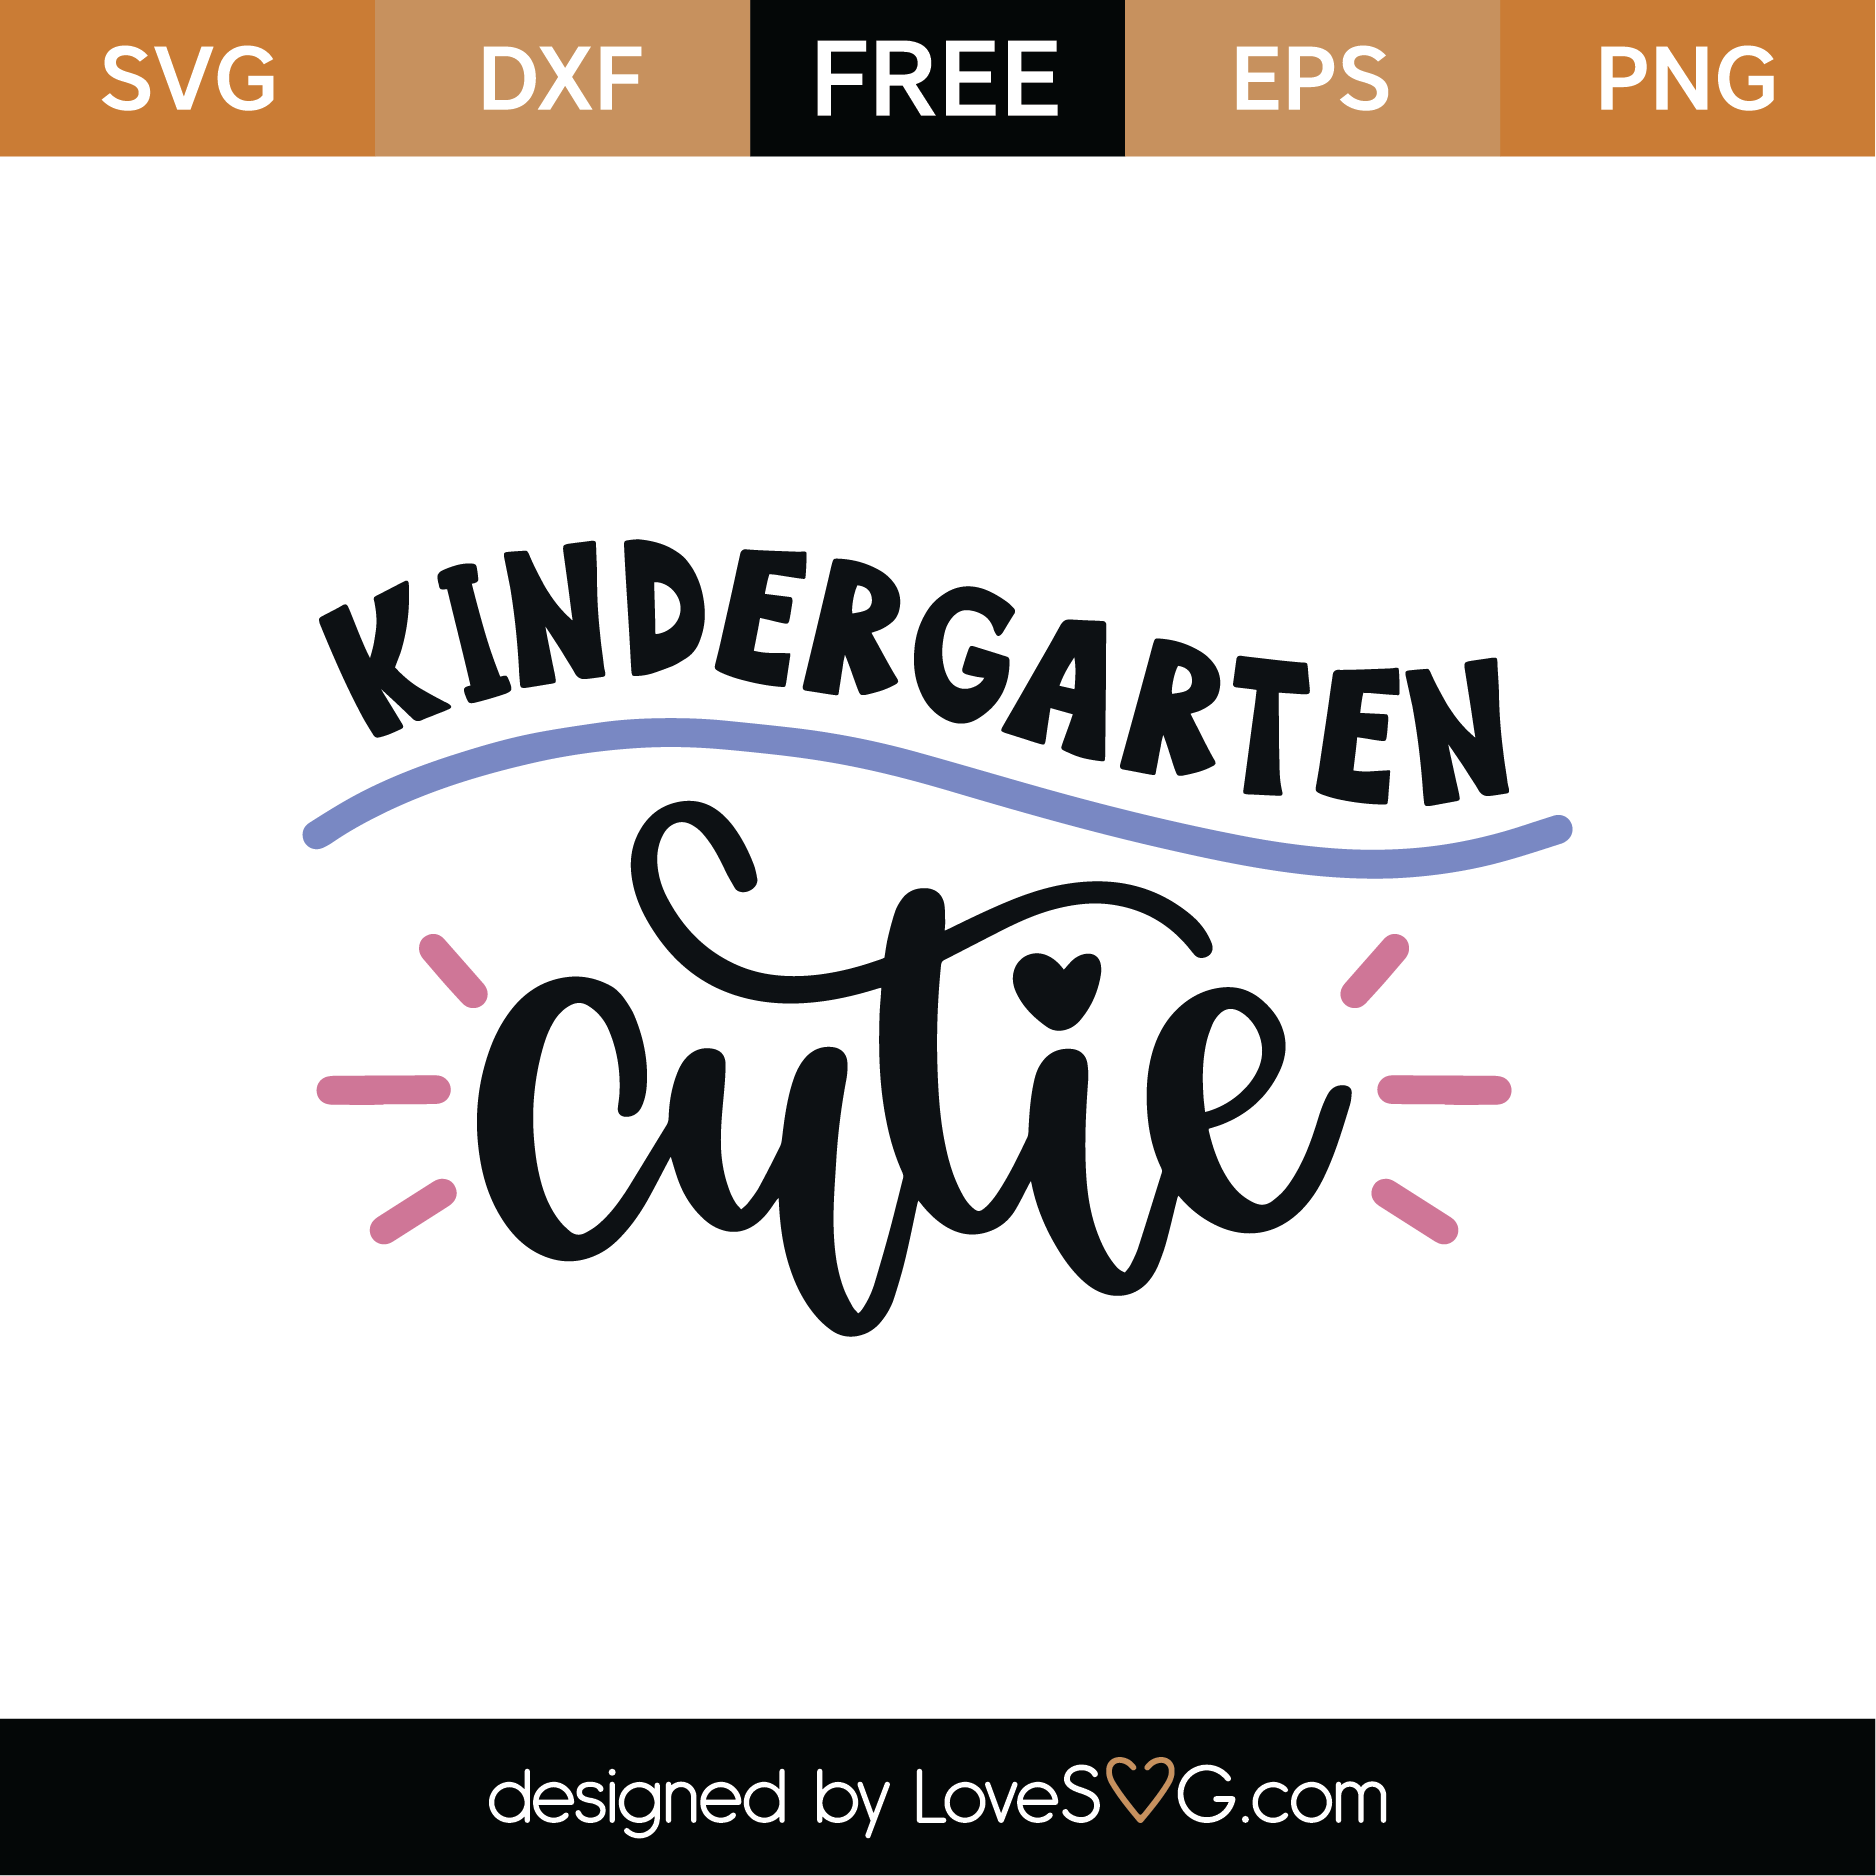 Free Free 125 Kindergarten Grad Svg Free SVG PNG EPS DXF File